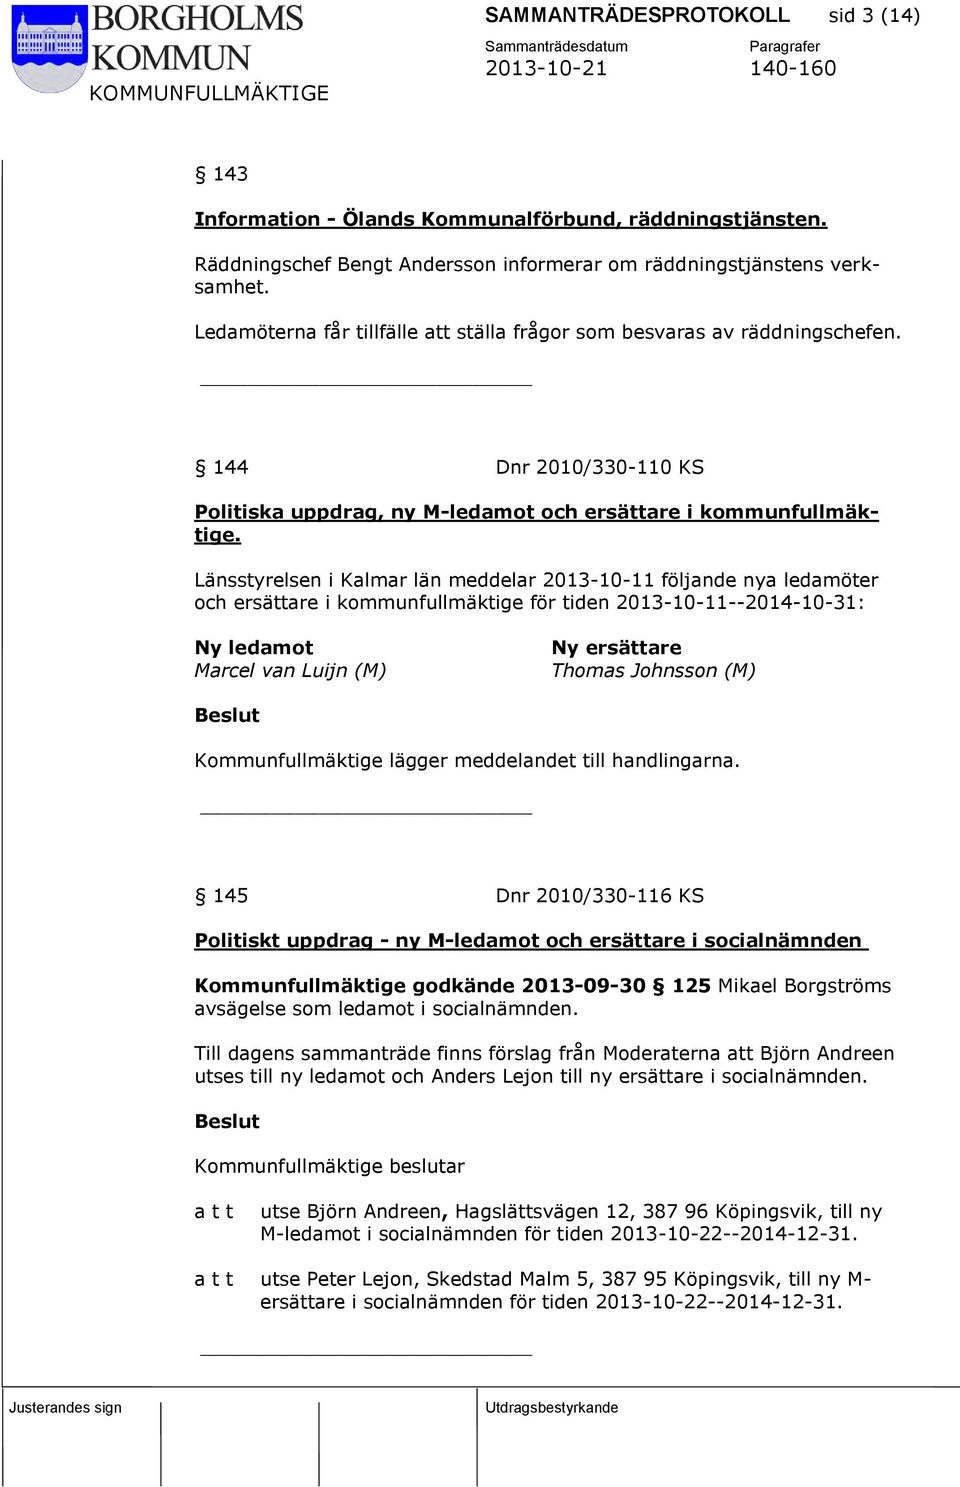 Länsstyrelsen i Kalmar län meddelar 2013-10-11 följande nya ledamöter och ersättare i kommunfullmäktige för tiden 2013-10-11--2014-10-31: Ny ledamot Marcel van Luijn (M) Ny ersättare Thomas Johnsson